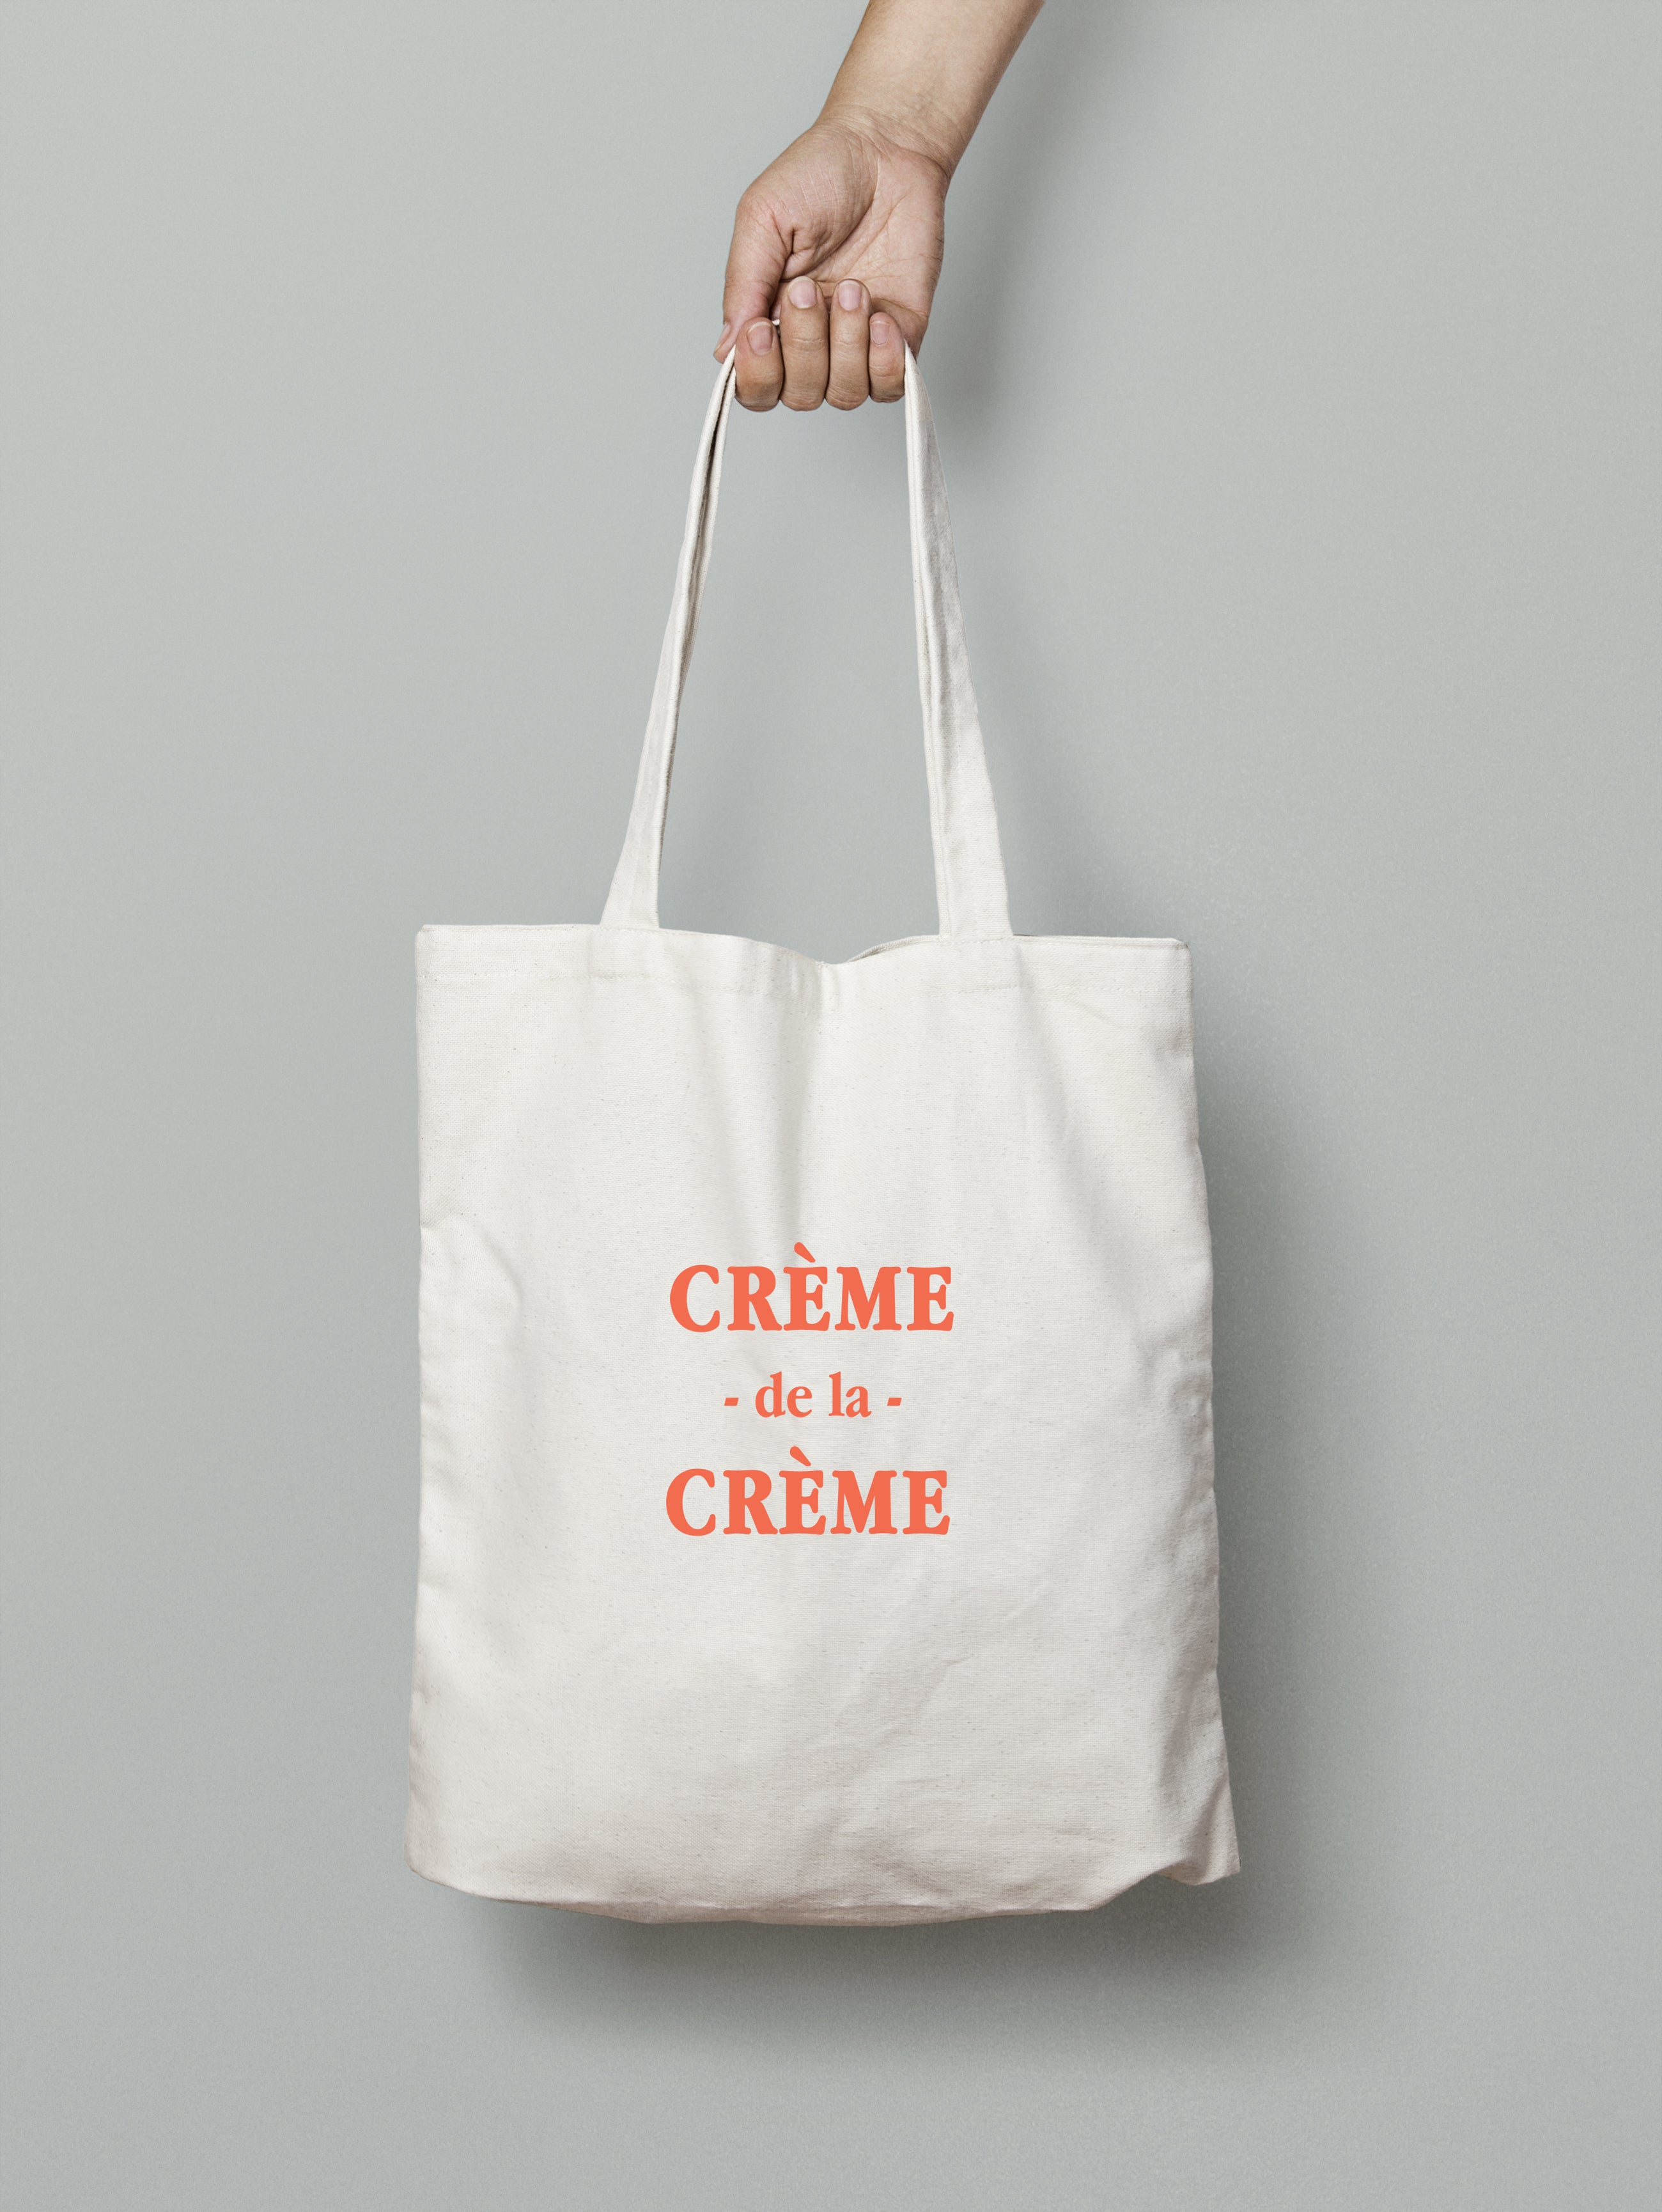 Tote bag "Crème de la crème"